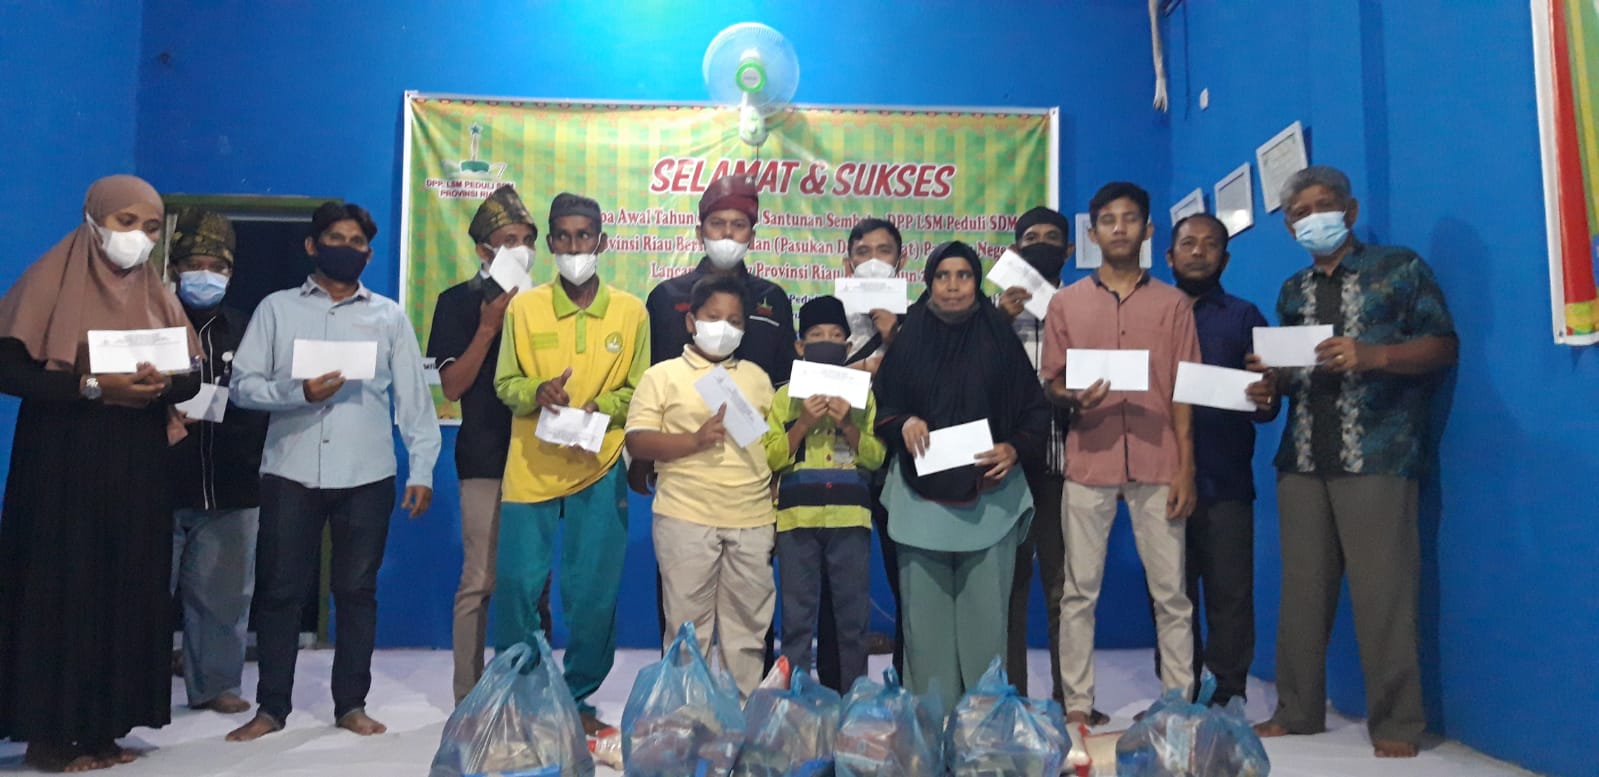 DPP LSM Peduli SDM Prov Riau Sukses Gelar Buka Puasa Bersama dan Serahkan Bantuan Kemanusiaan